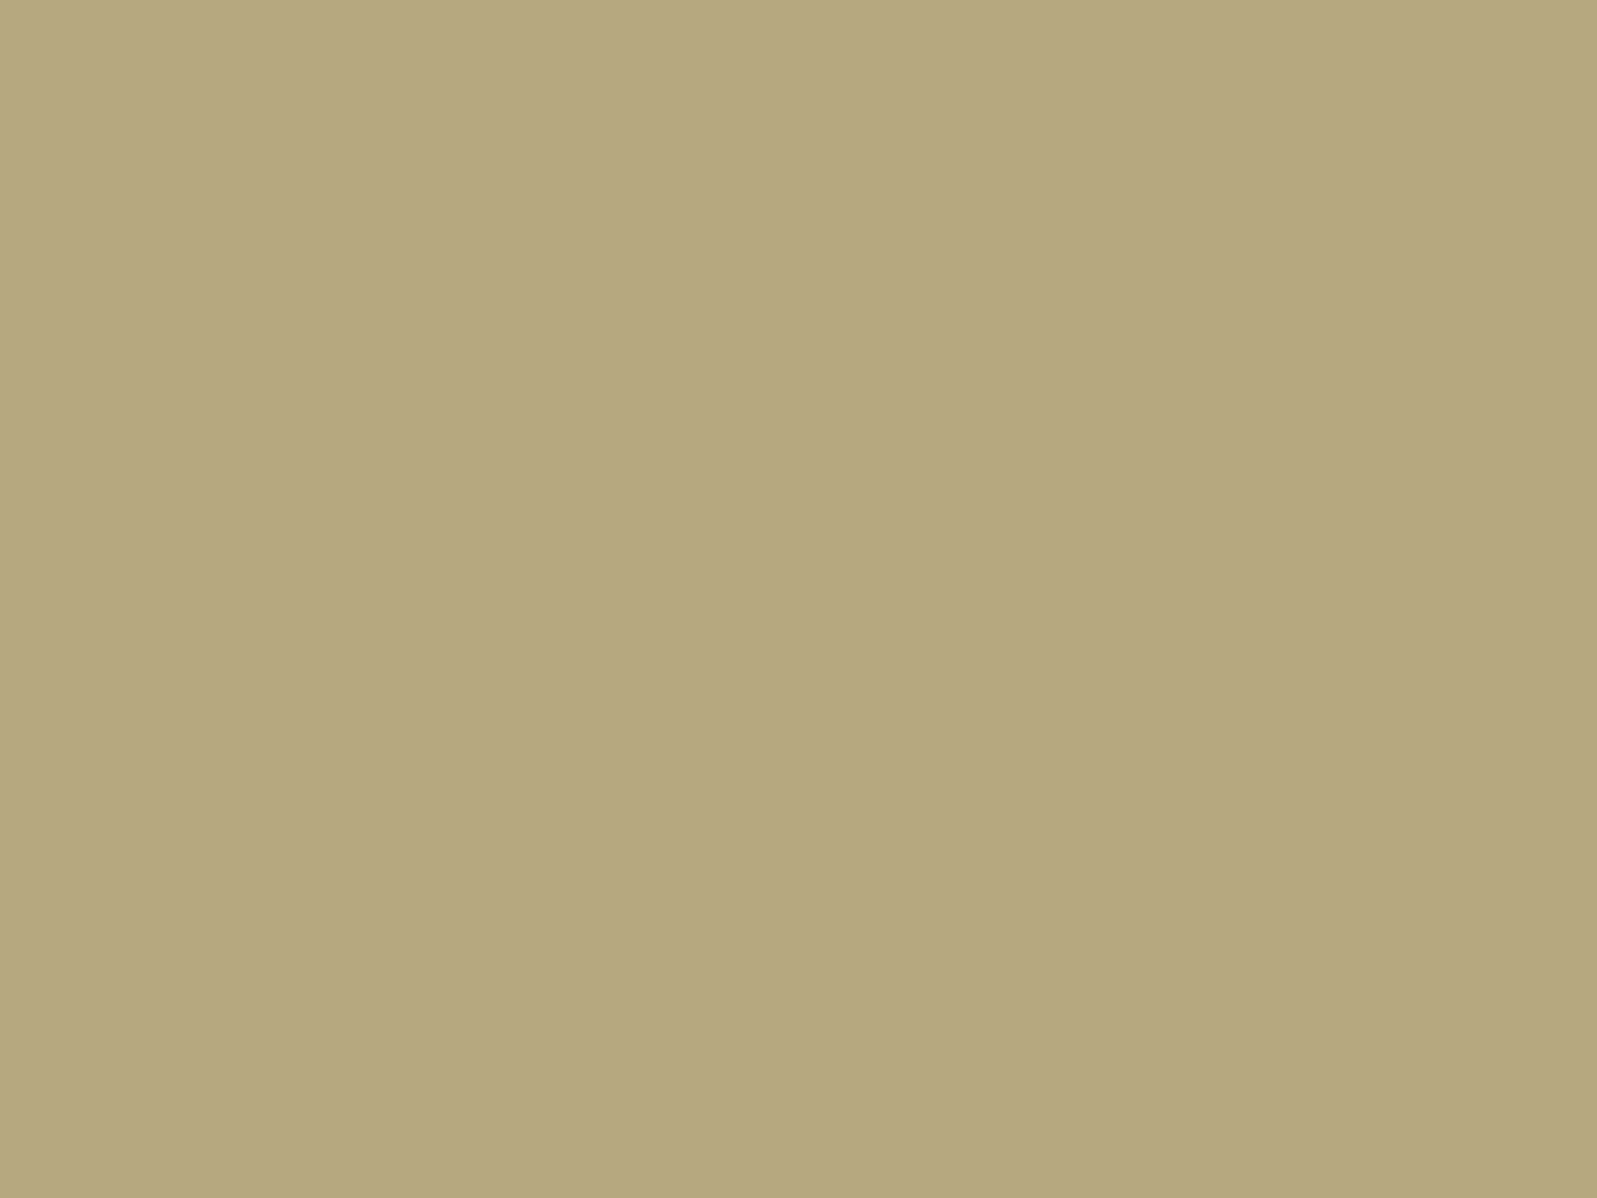 Иван Айвазовский. Девятый вал (фрагмент). 1850. Государственный Русский музей, Санкт-Петербург